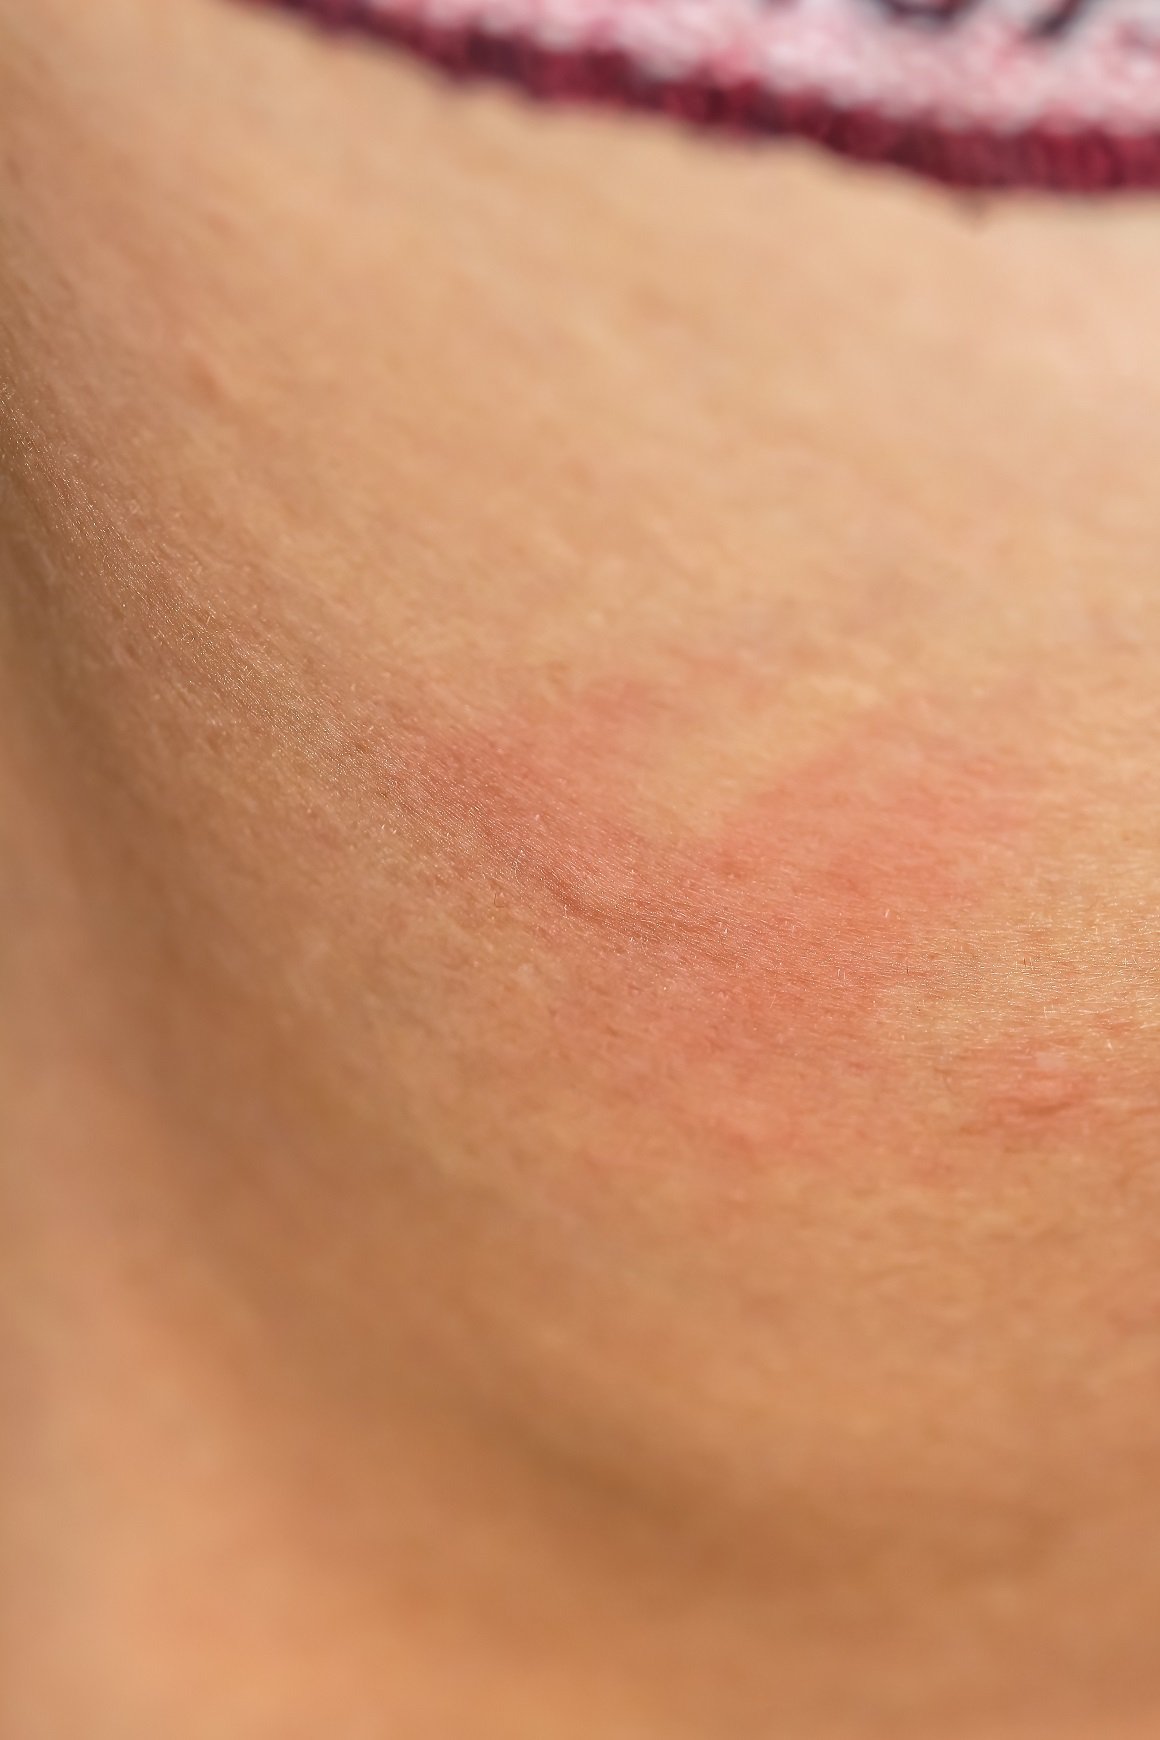 Ubod komarca - alergija